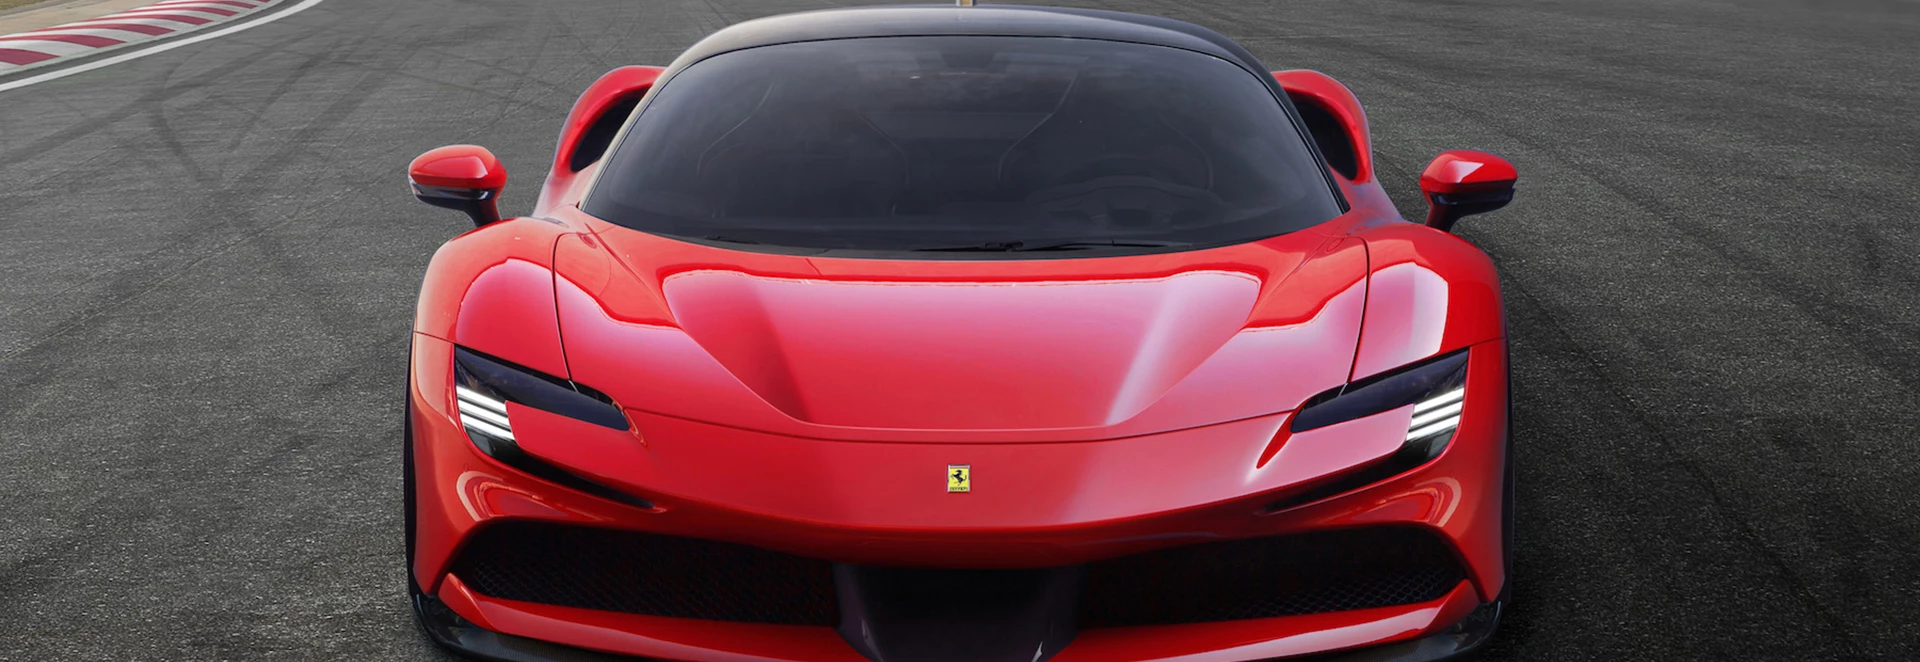 Ferrari unveils most powerful car – a new plug-in hybrid hypercar